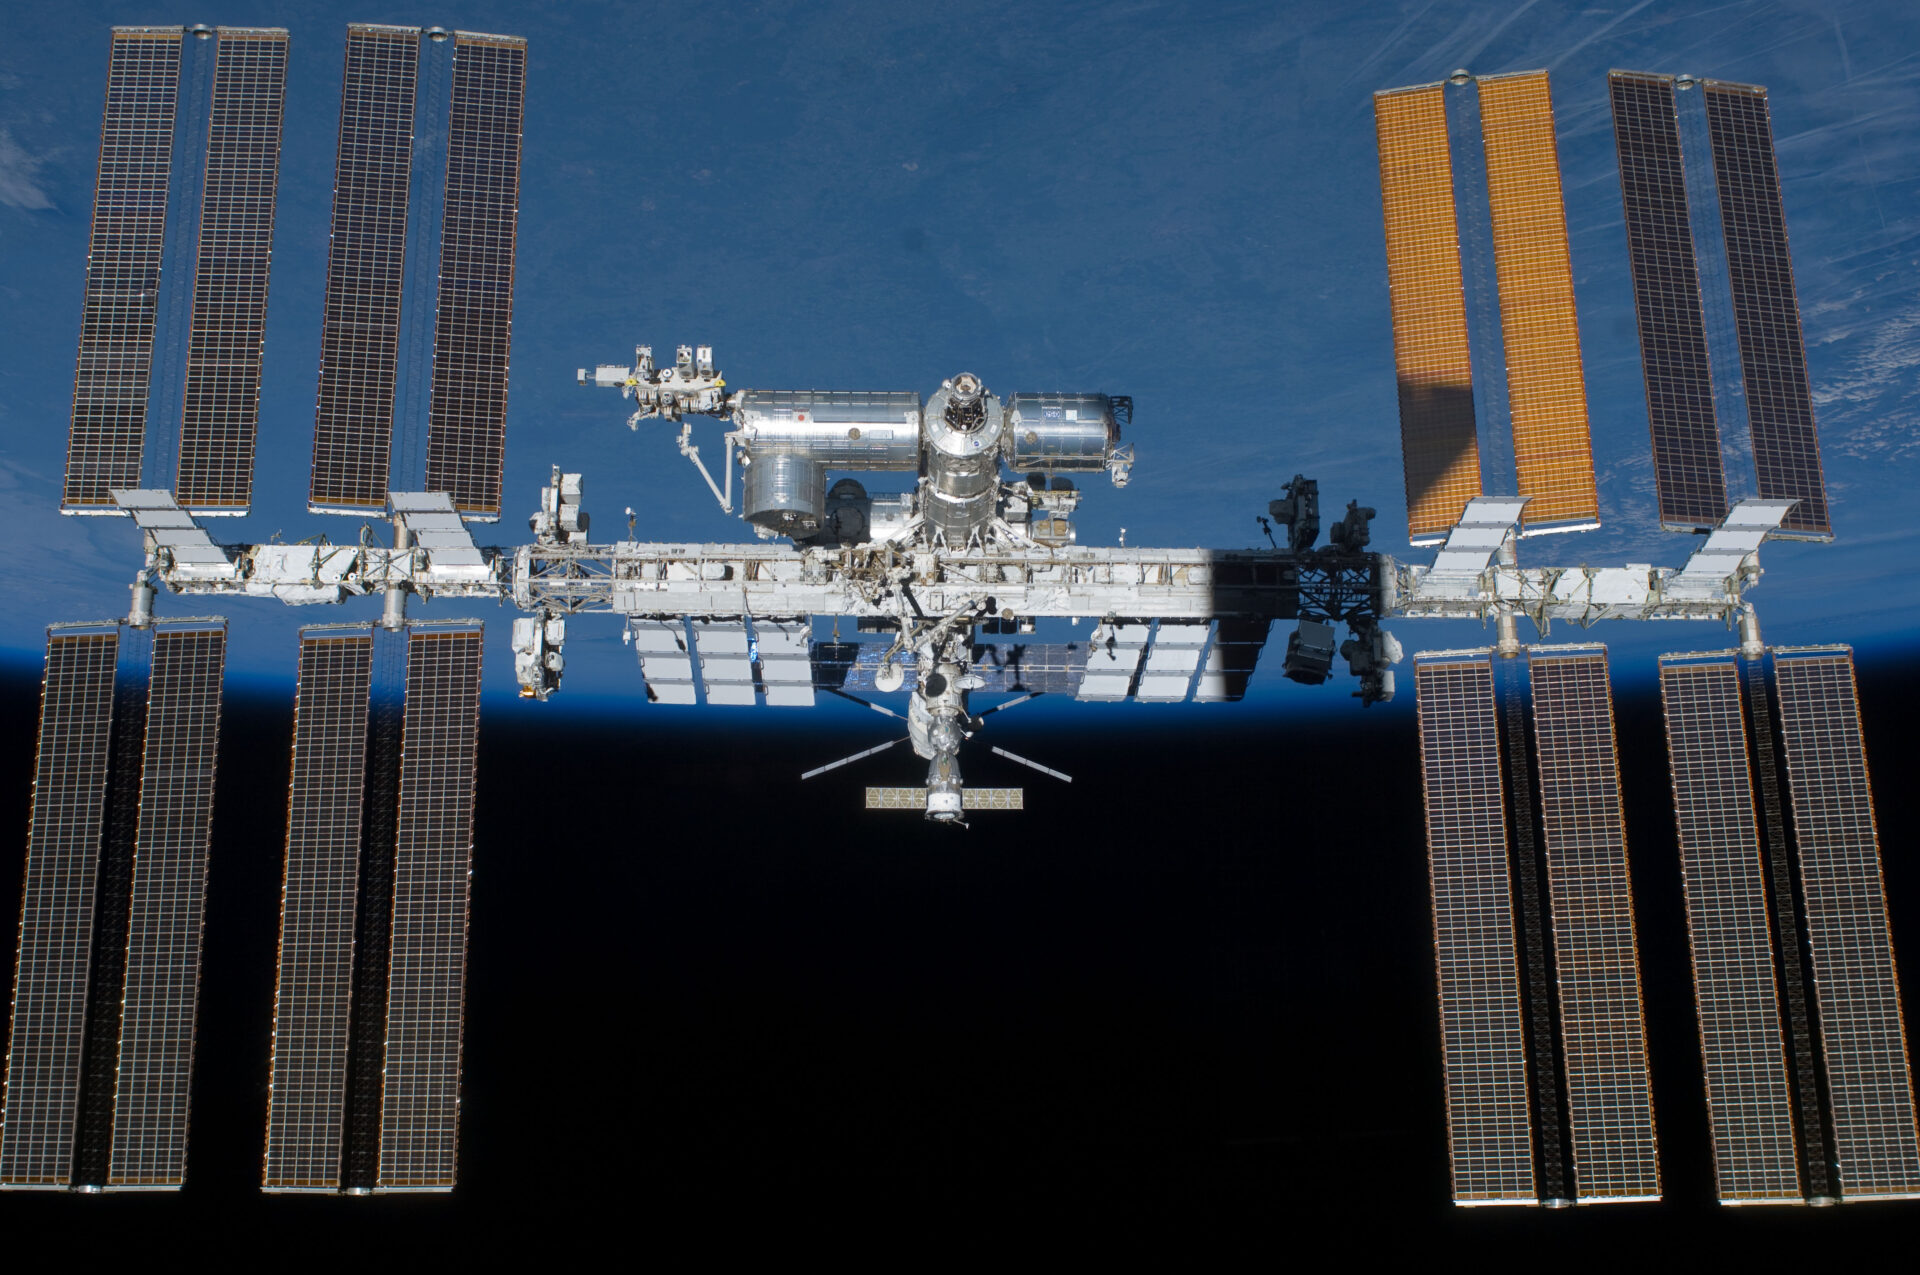 รัสเซียขู่จะออกจากสถานีอวกาศนานาชาติ แต่ NASA ต้องการให้มีการร่วมมือต่อไป!